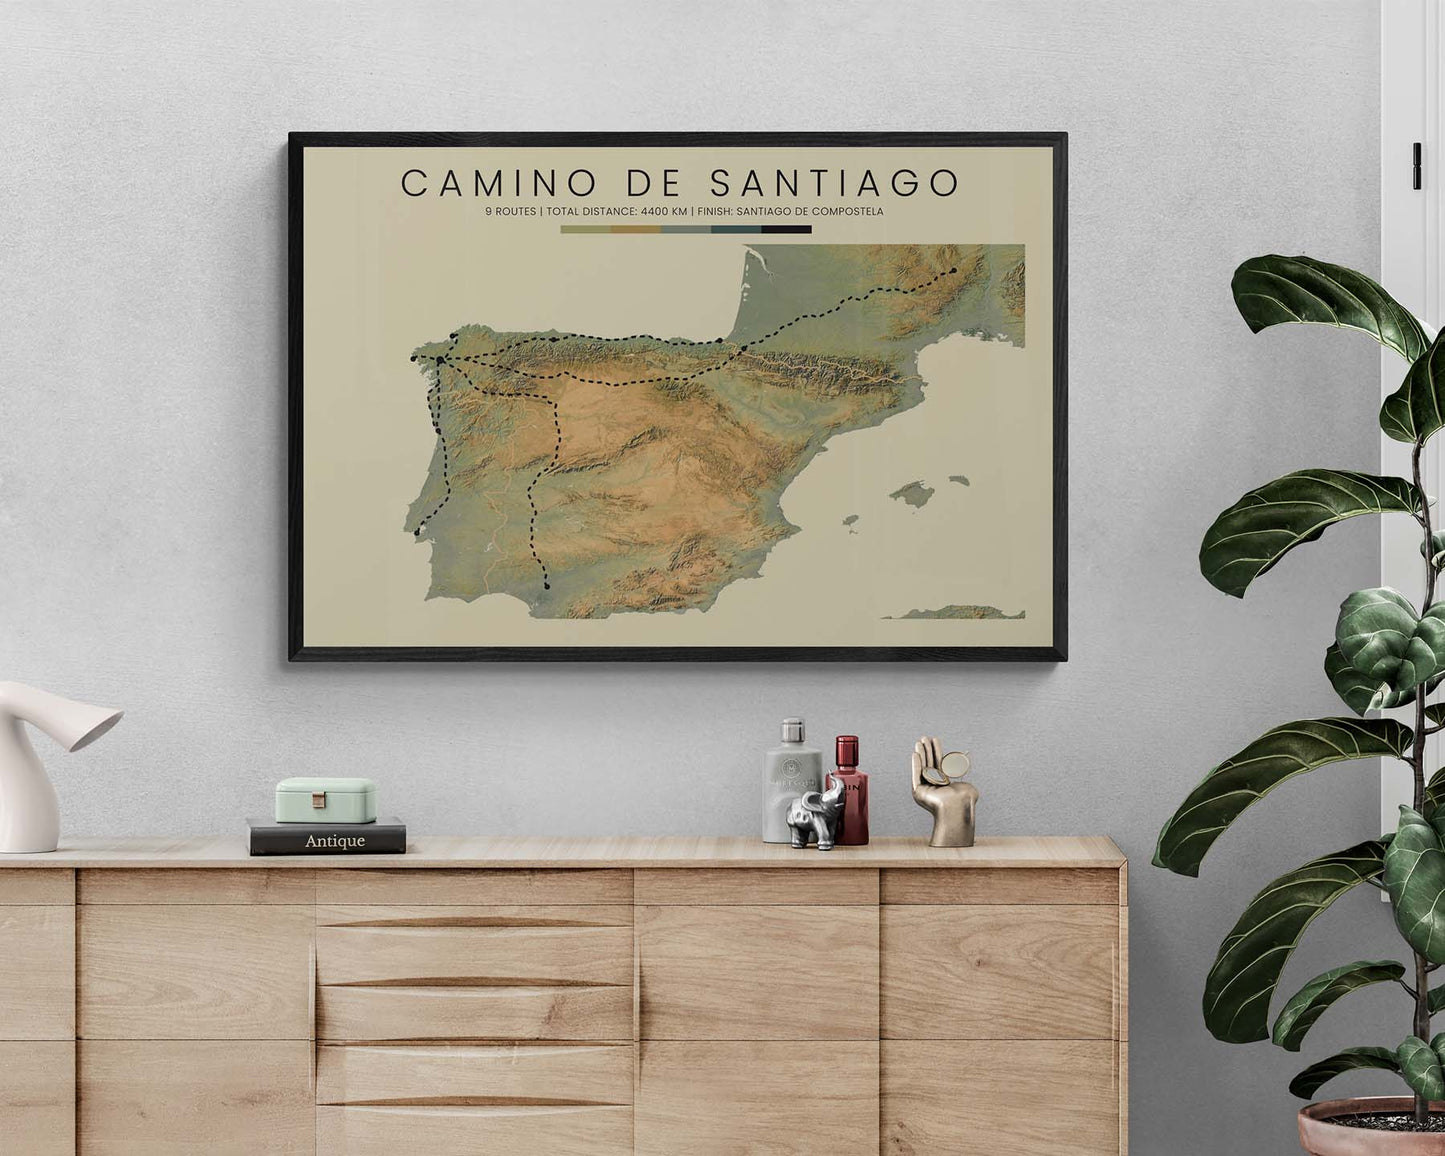 Camino de Santiago (Santiago de Compostela) Thru Hike Wall Decor with Contour Map in Modern Room Decor